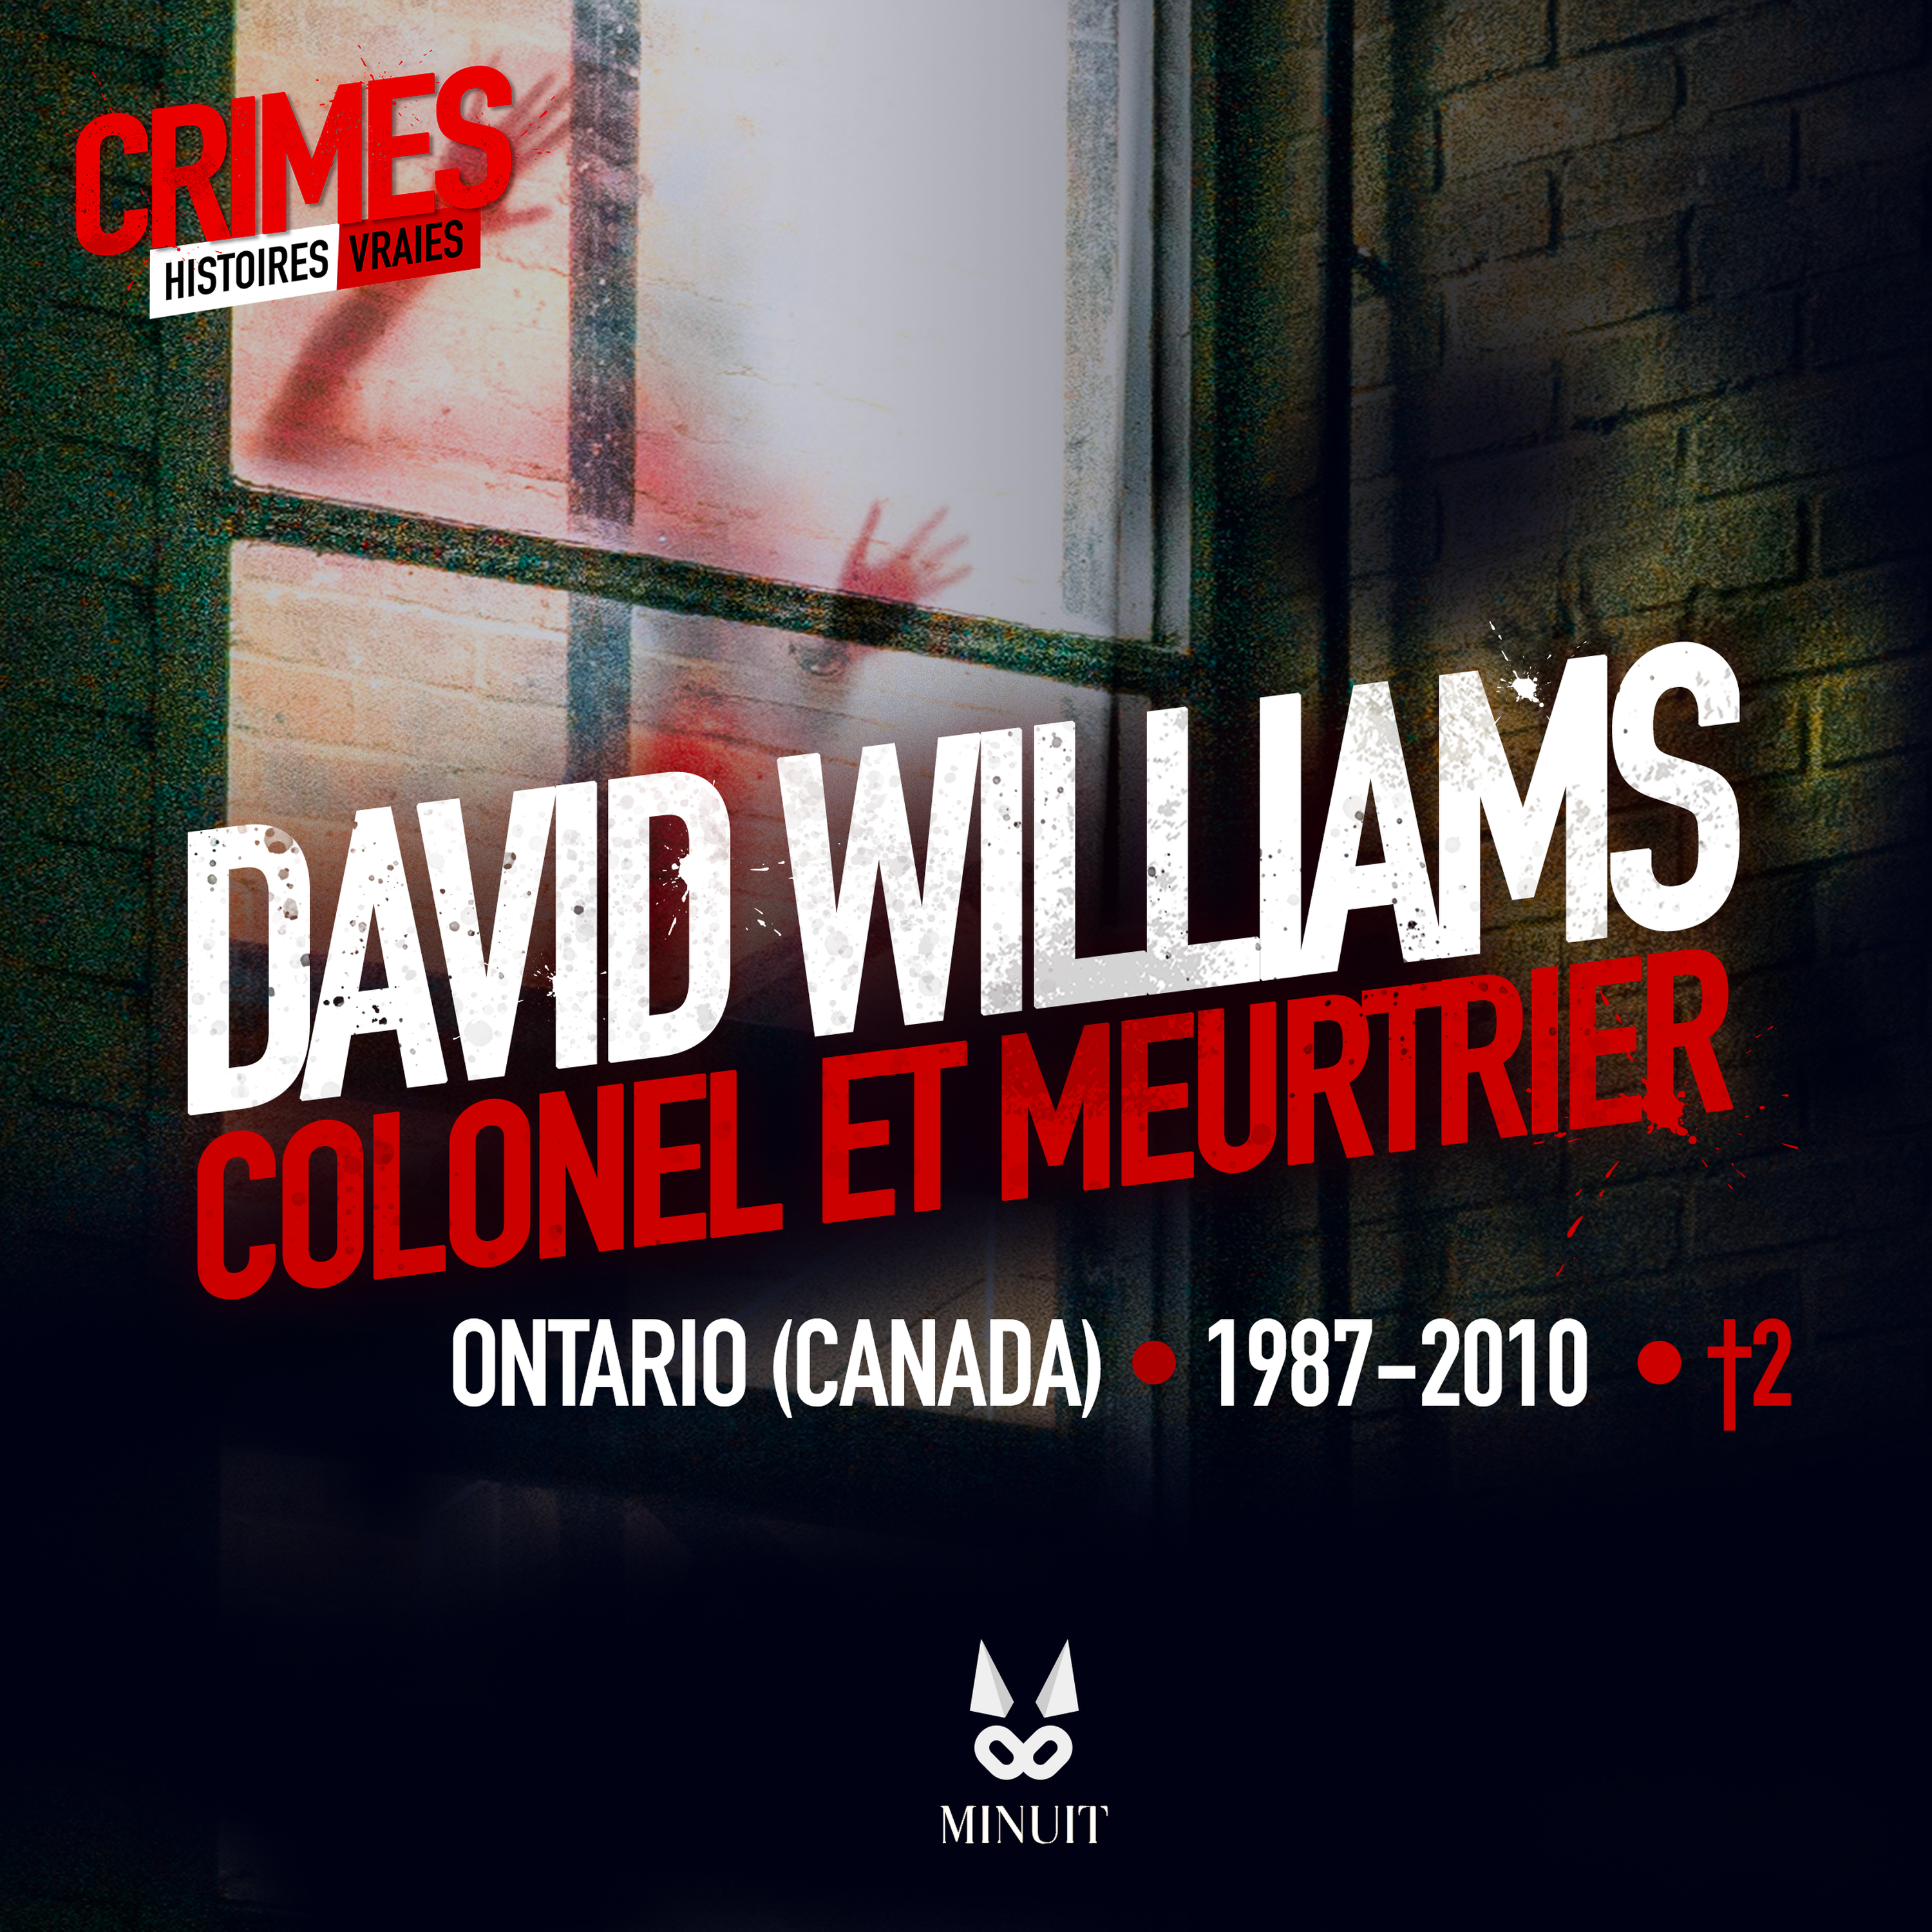 David Williams, colonel et meurtrier • Episode 2 sur 2